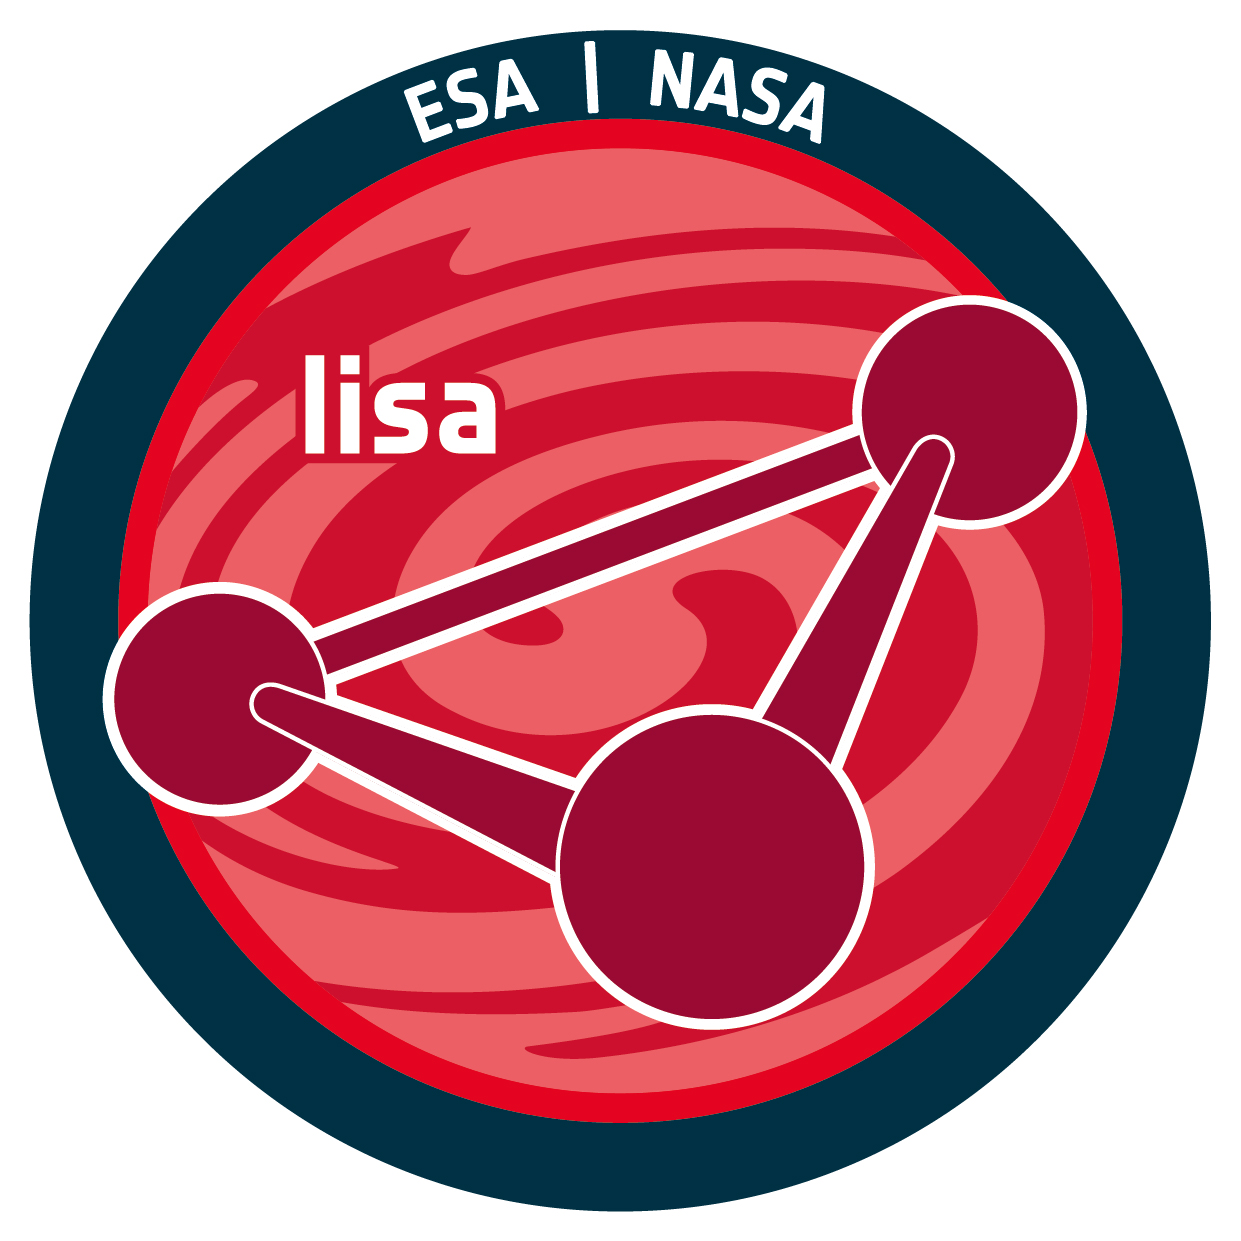 ESA and NASA logos